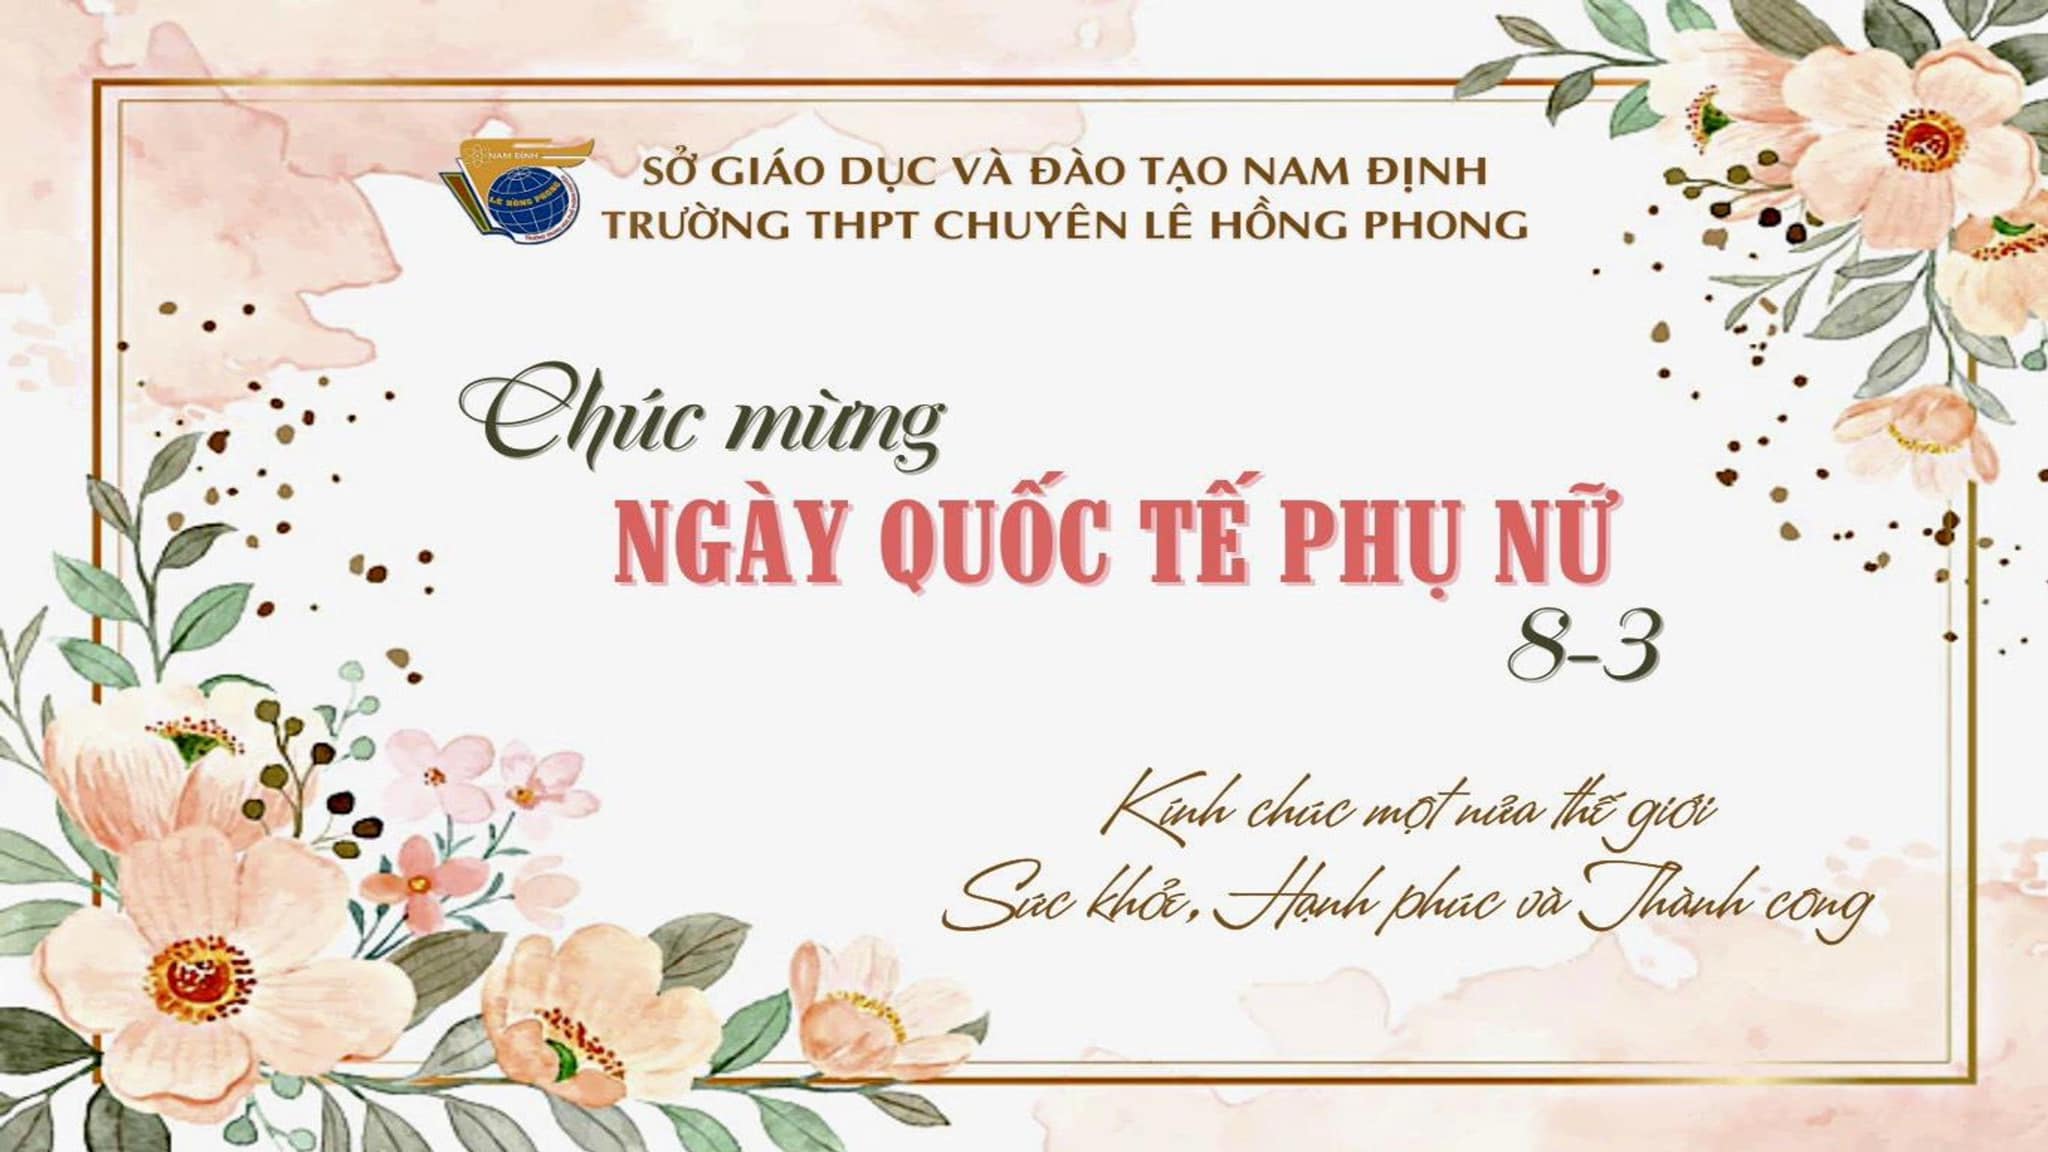 Hiệu trưởng trường THPT chuyên Lê Hồng Phong chúc mừng các nữ cán bộ, giáo viên, nhân viên và nữ sinh nhân kỉ niệm 114 năm ngày Quốc tế Phụ nữ 8/3